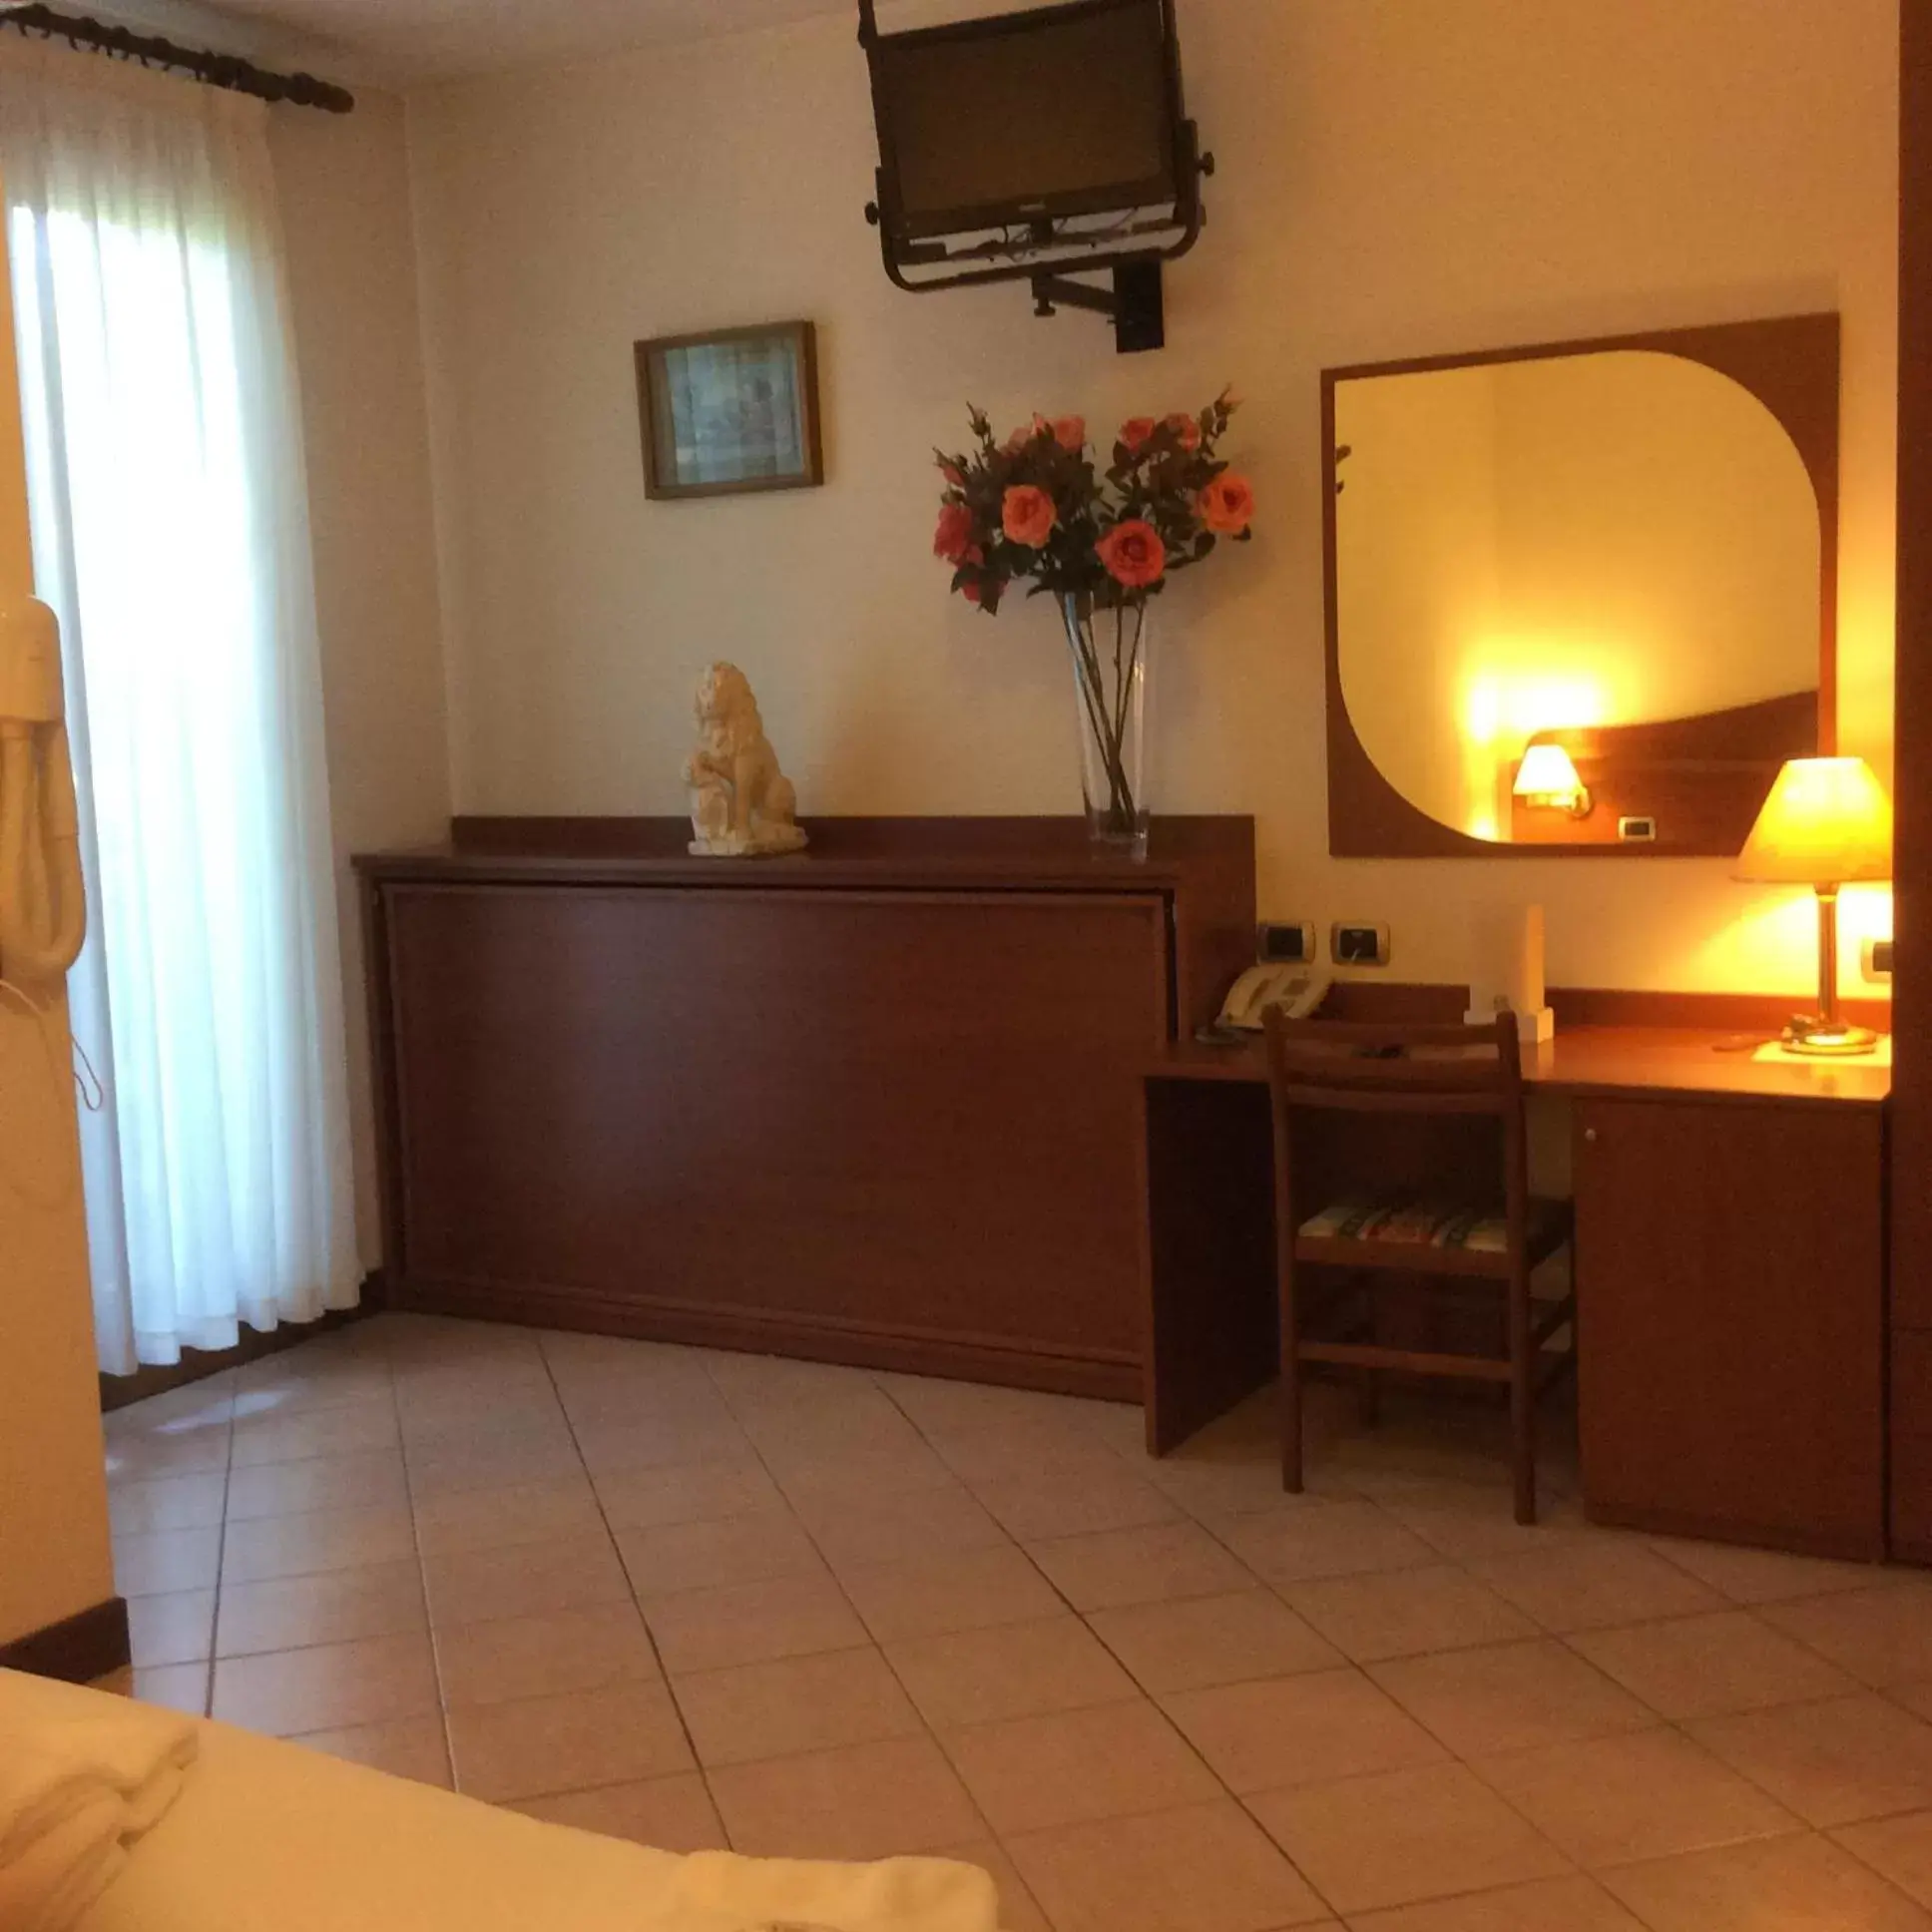 Bedroom, Lobby/Reception in Hotel Pizzeria Ristorante "Al Leone"